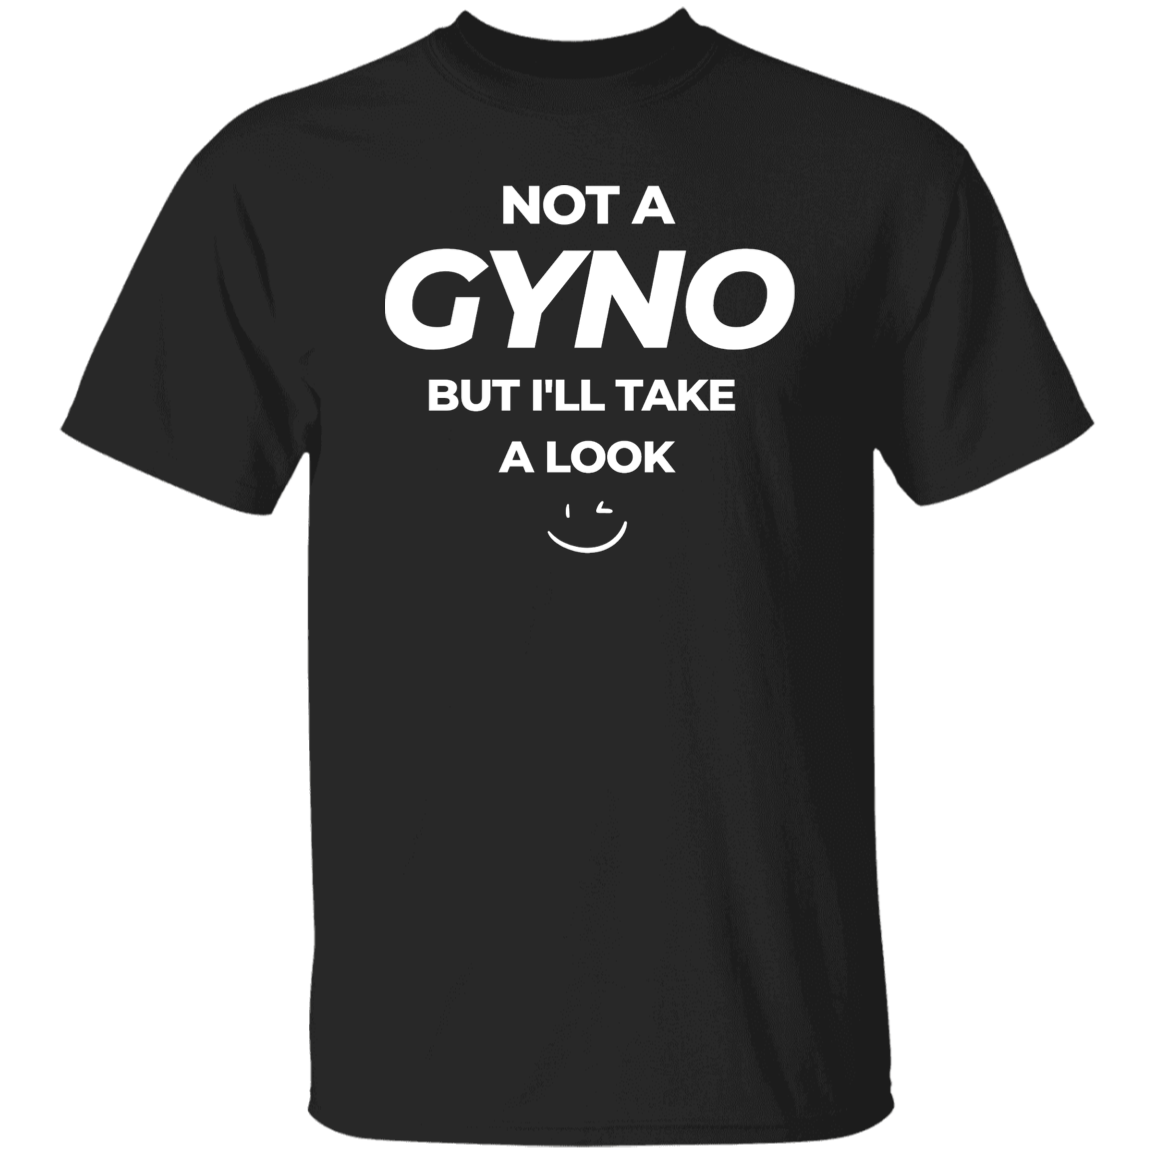 NOT A GYNO T-SHIRT